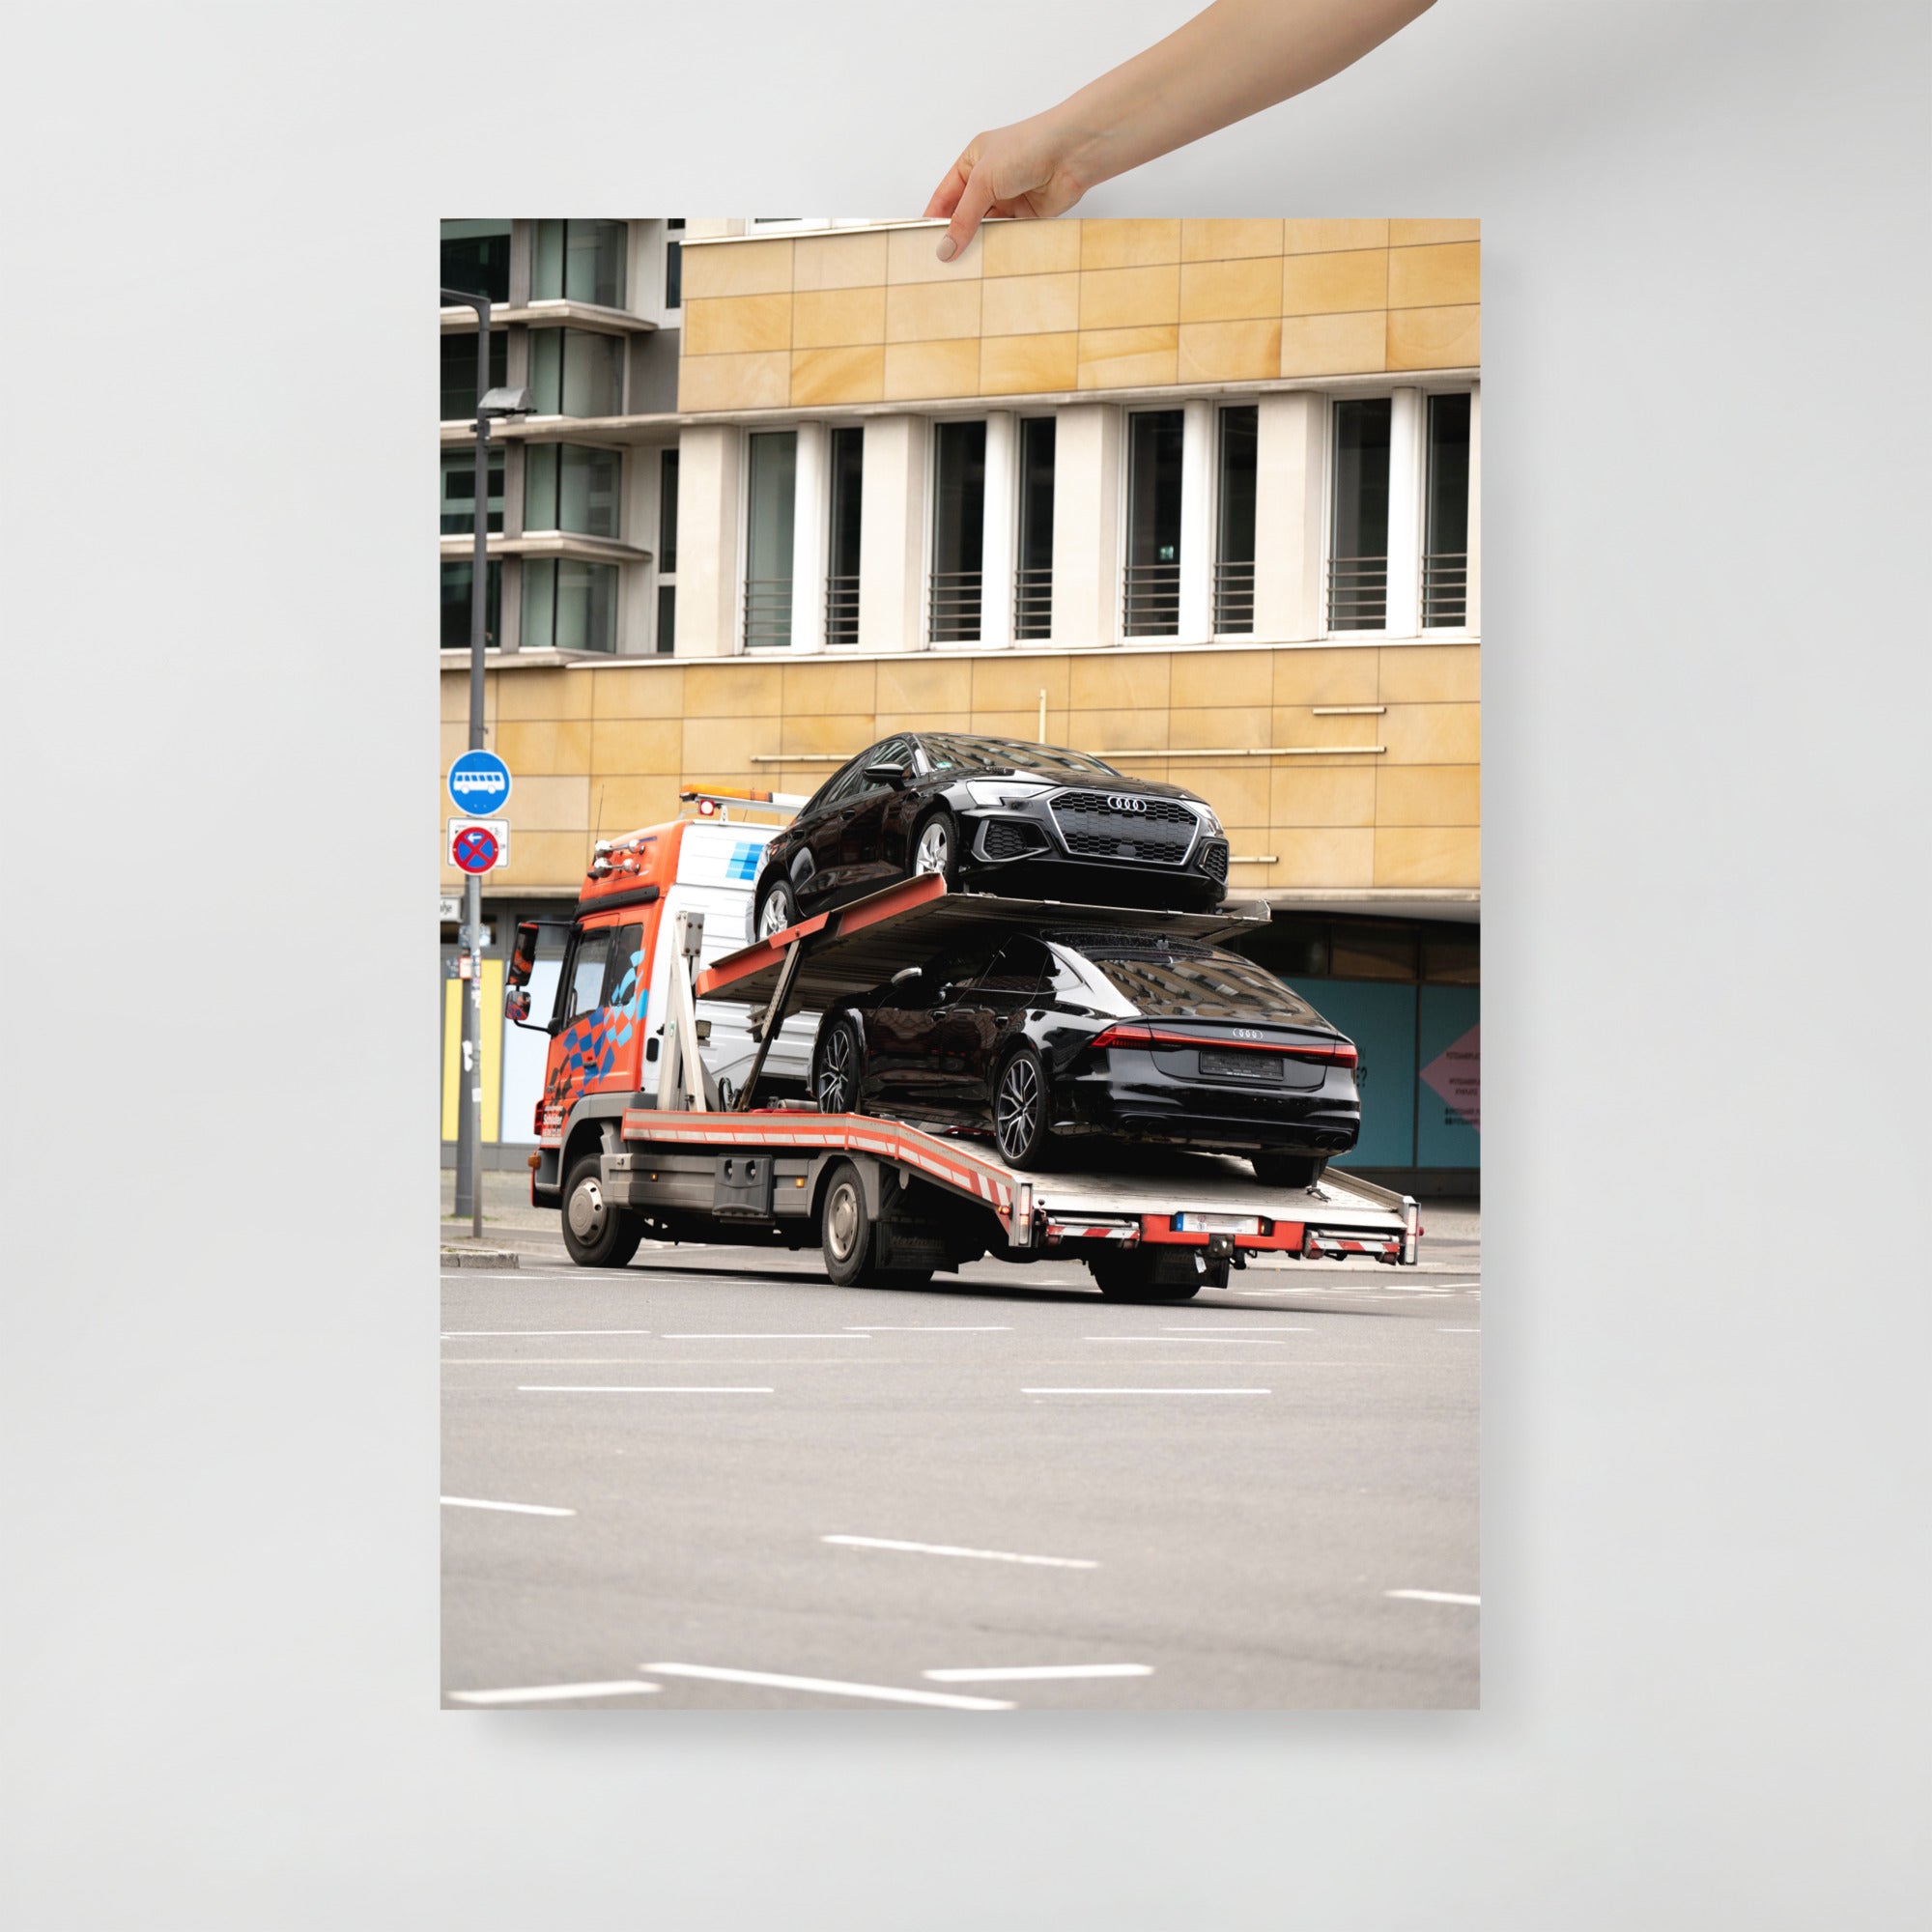 Poster mural - Audi RS7 – Photographie de voiture de sport – Poster photo, poster XXL, Photo d’art, photographie murale et des posters muraux des photographies de rue unique au monde. La boutique de posters créée par un Photographe français.